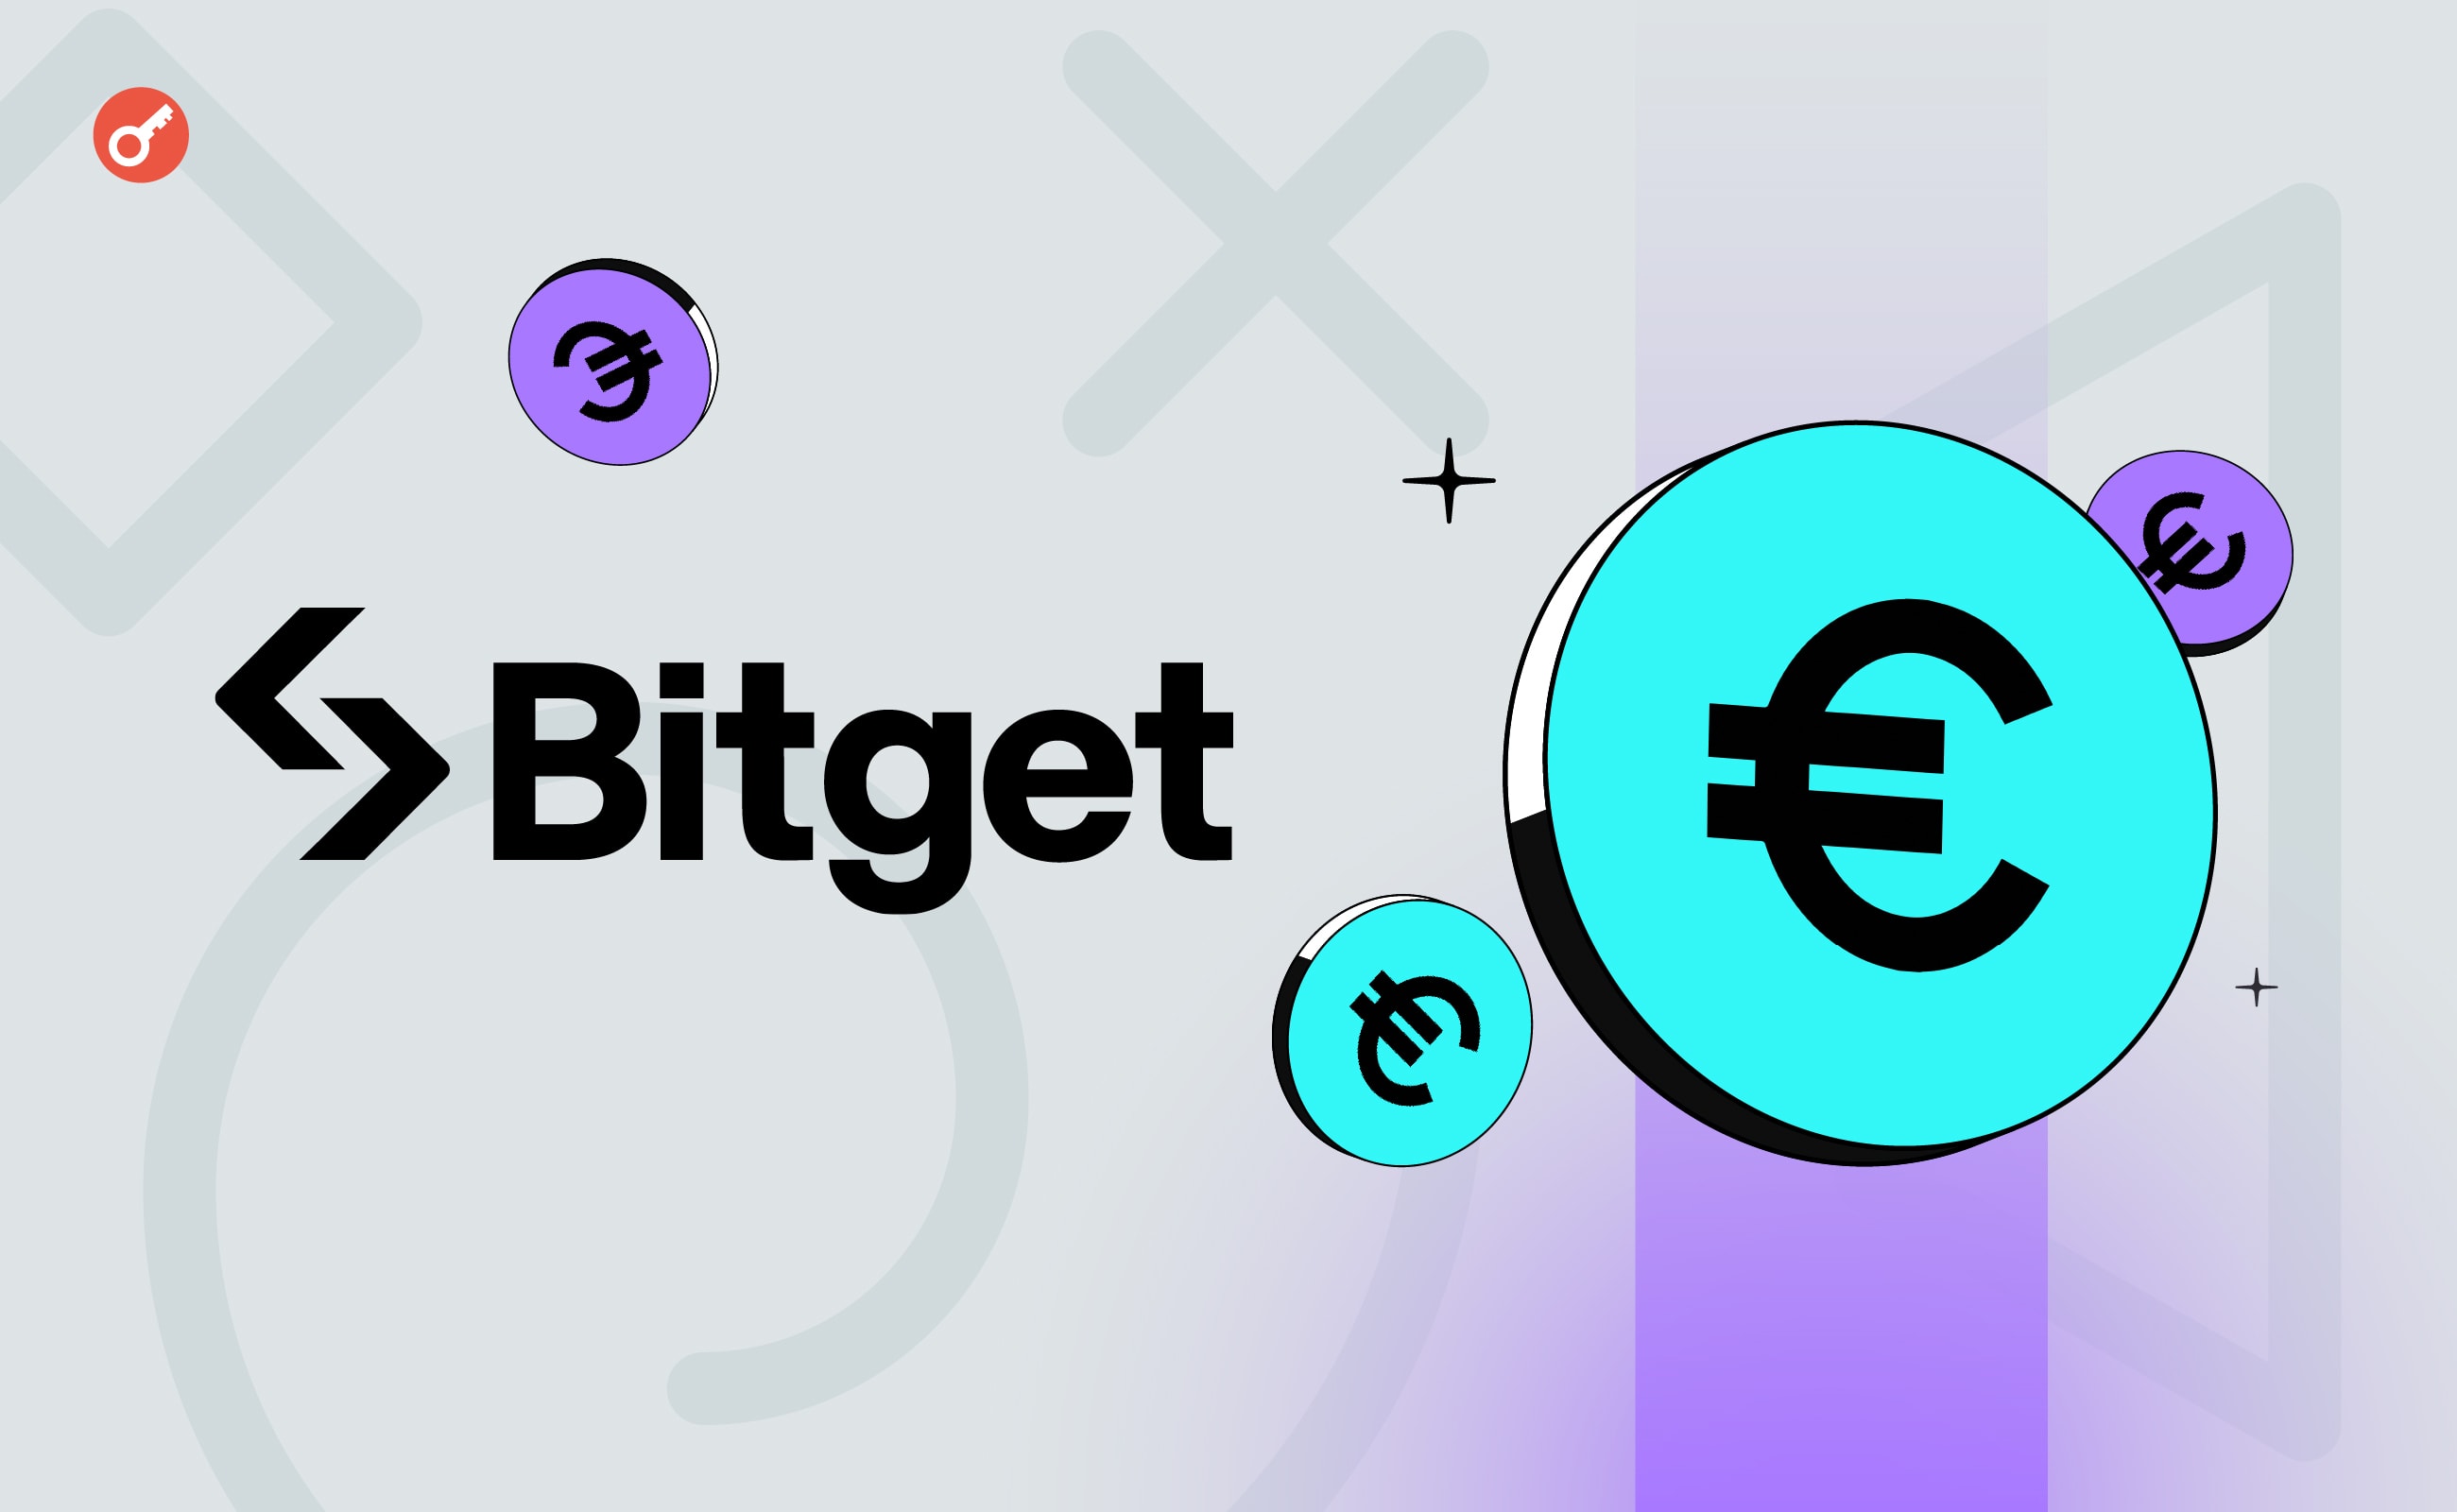 Bitget добавила пополнение и снятие средств в евро для институциональных инвесторов. Заглавный коллаж новости.